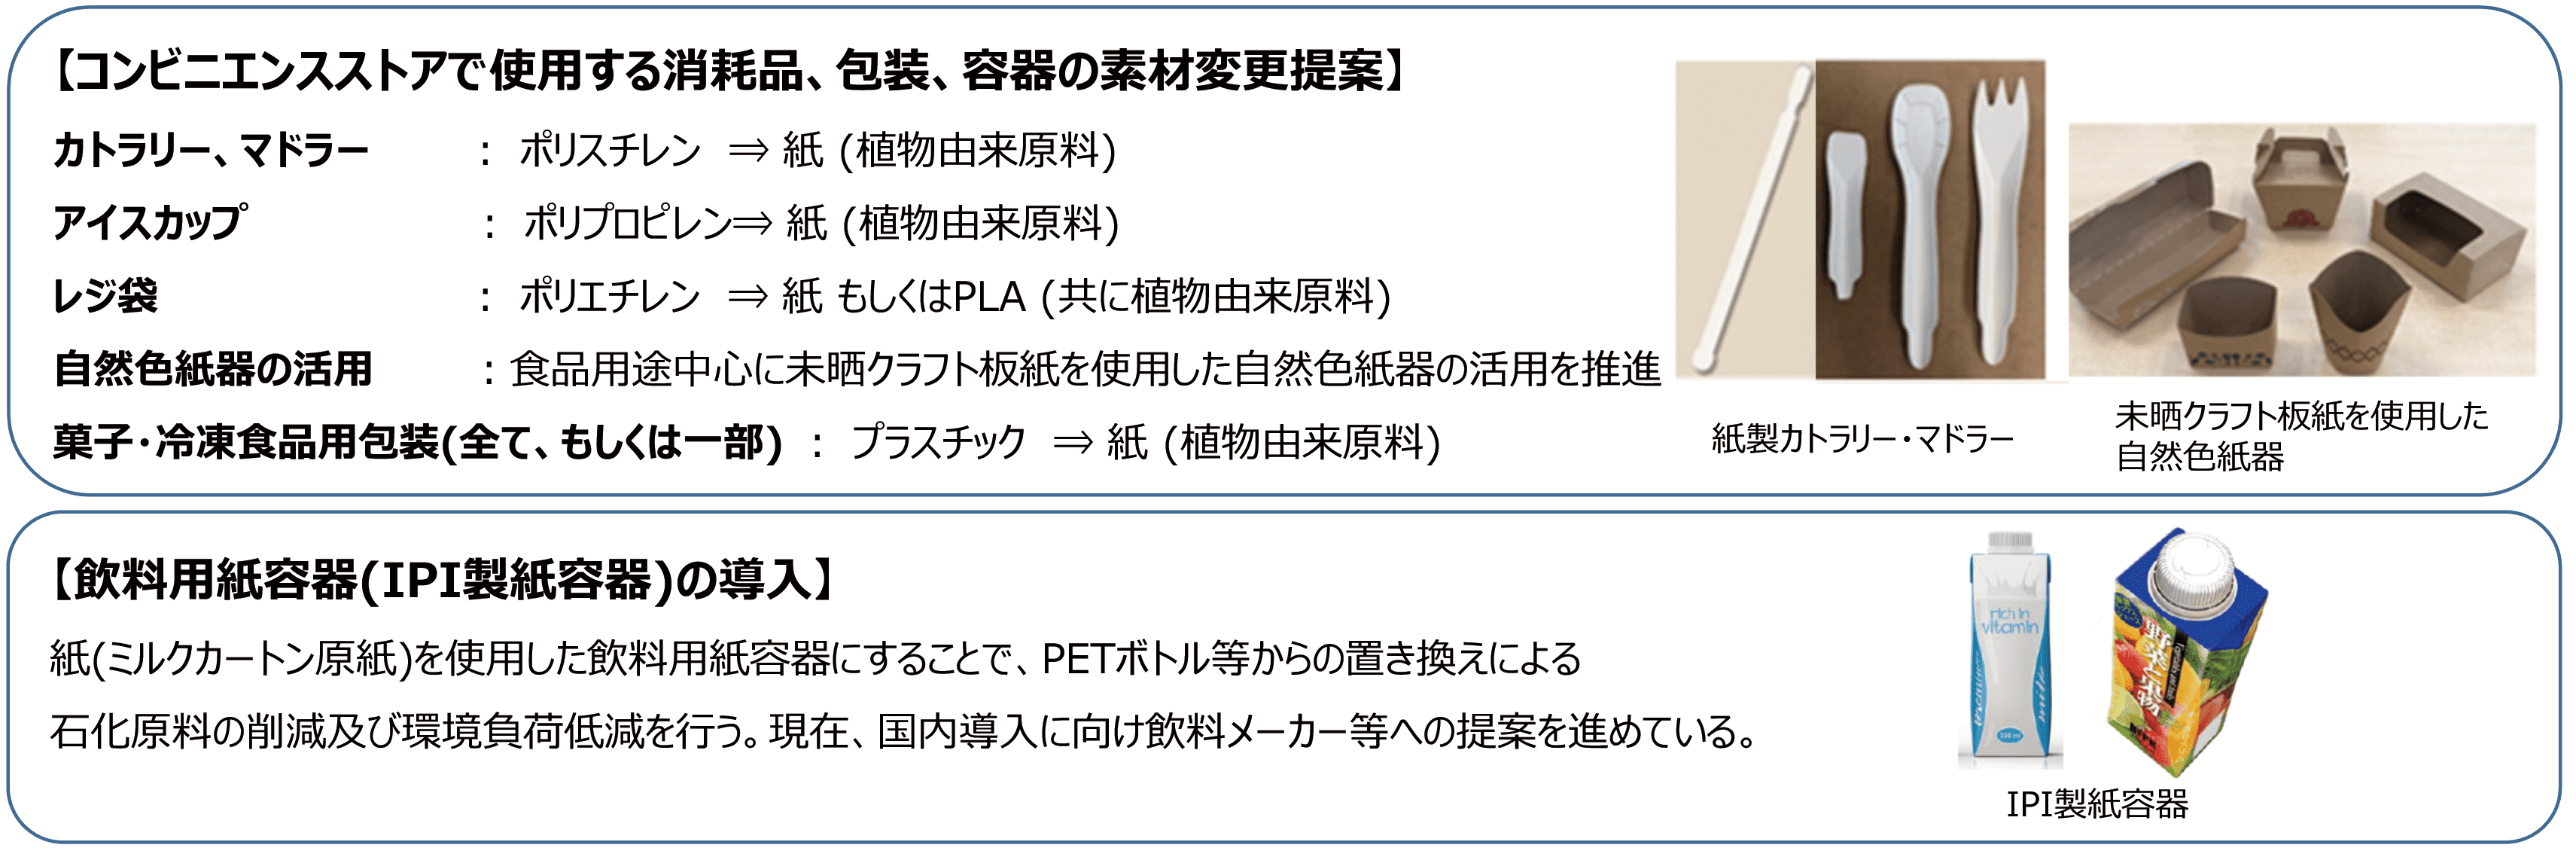 三菱商事パッケージング株式会社における石化原料削減の取組み